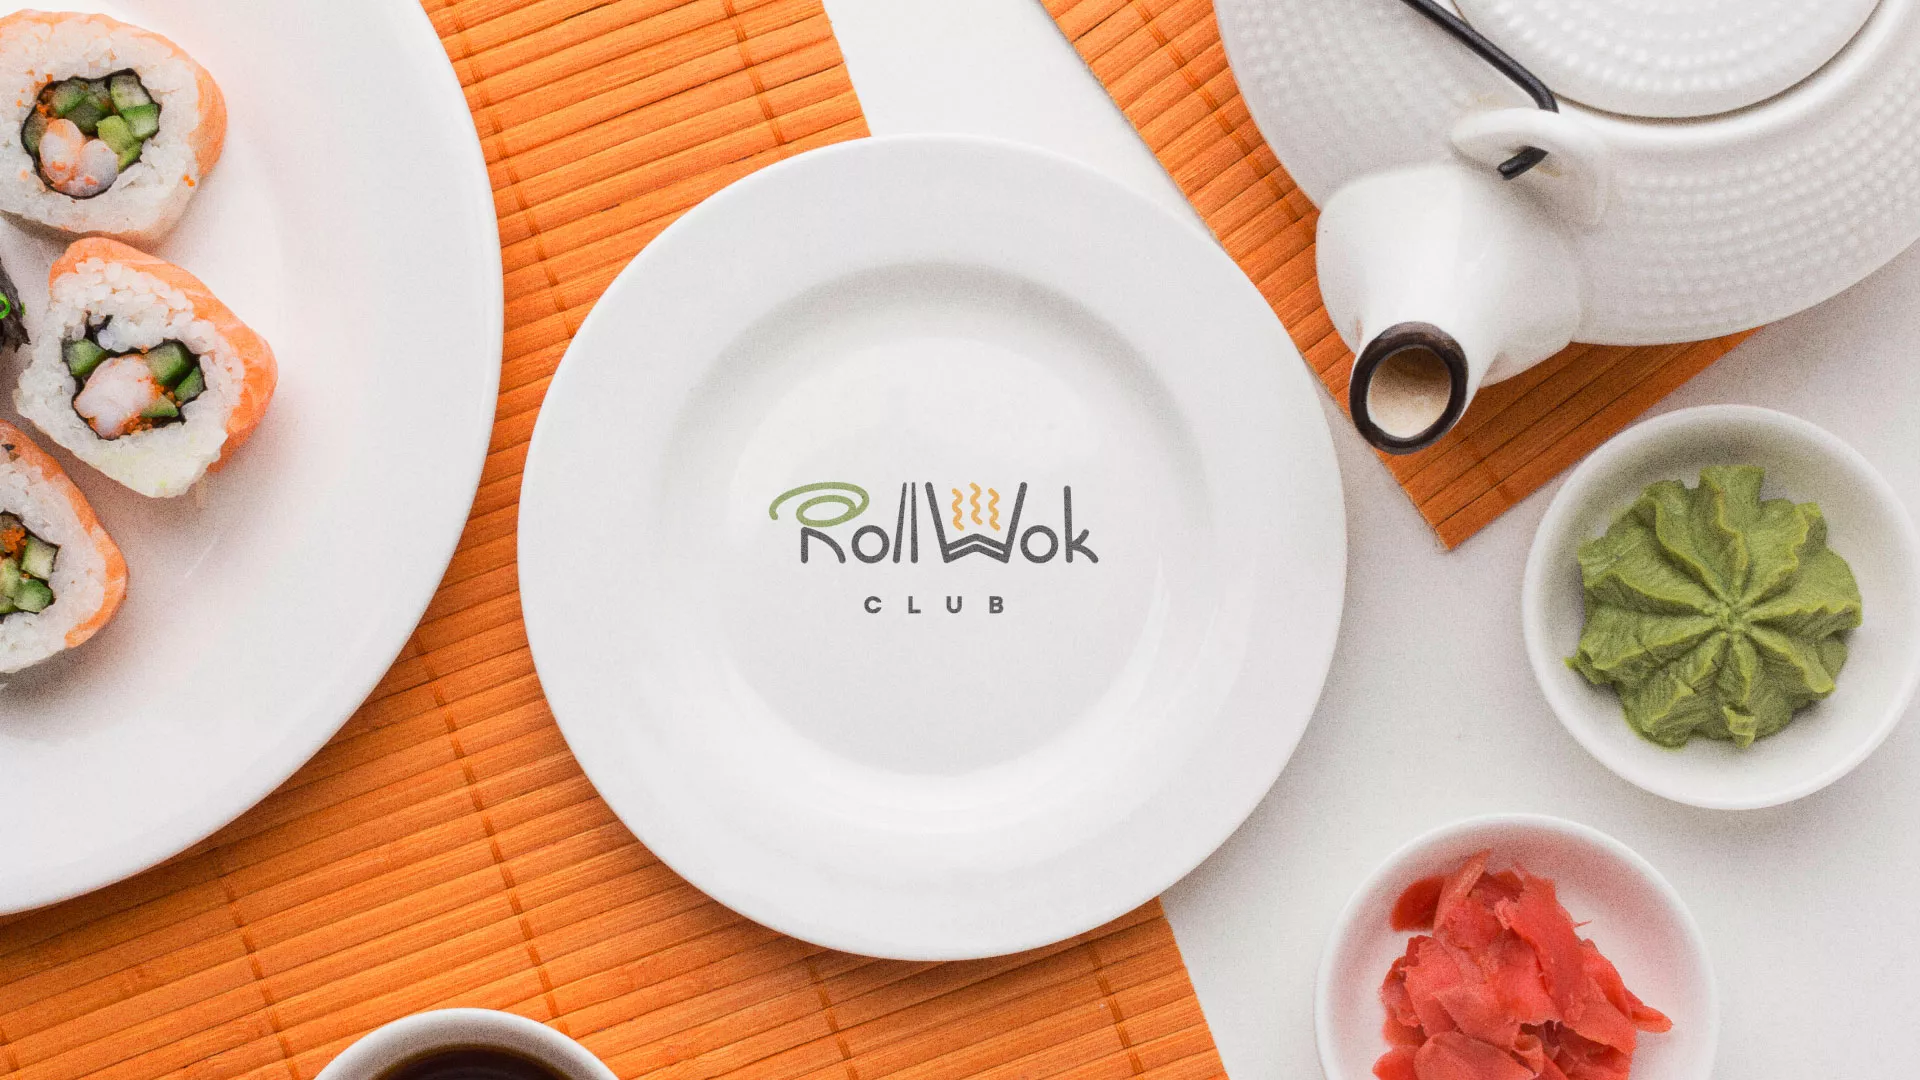 Разработка логотипа и фирменного стиля суши-бара «Roll Wok Club» в Среднеуральске